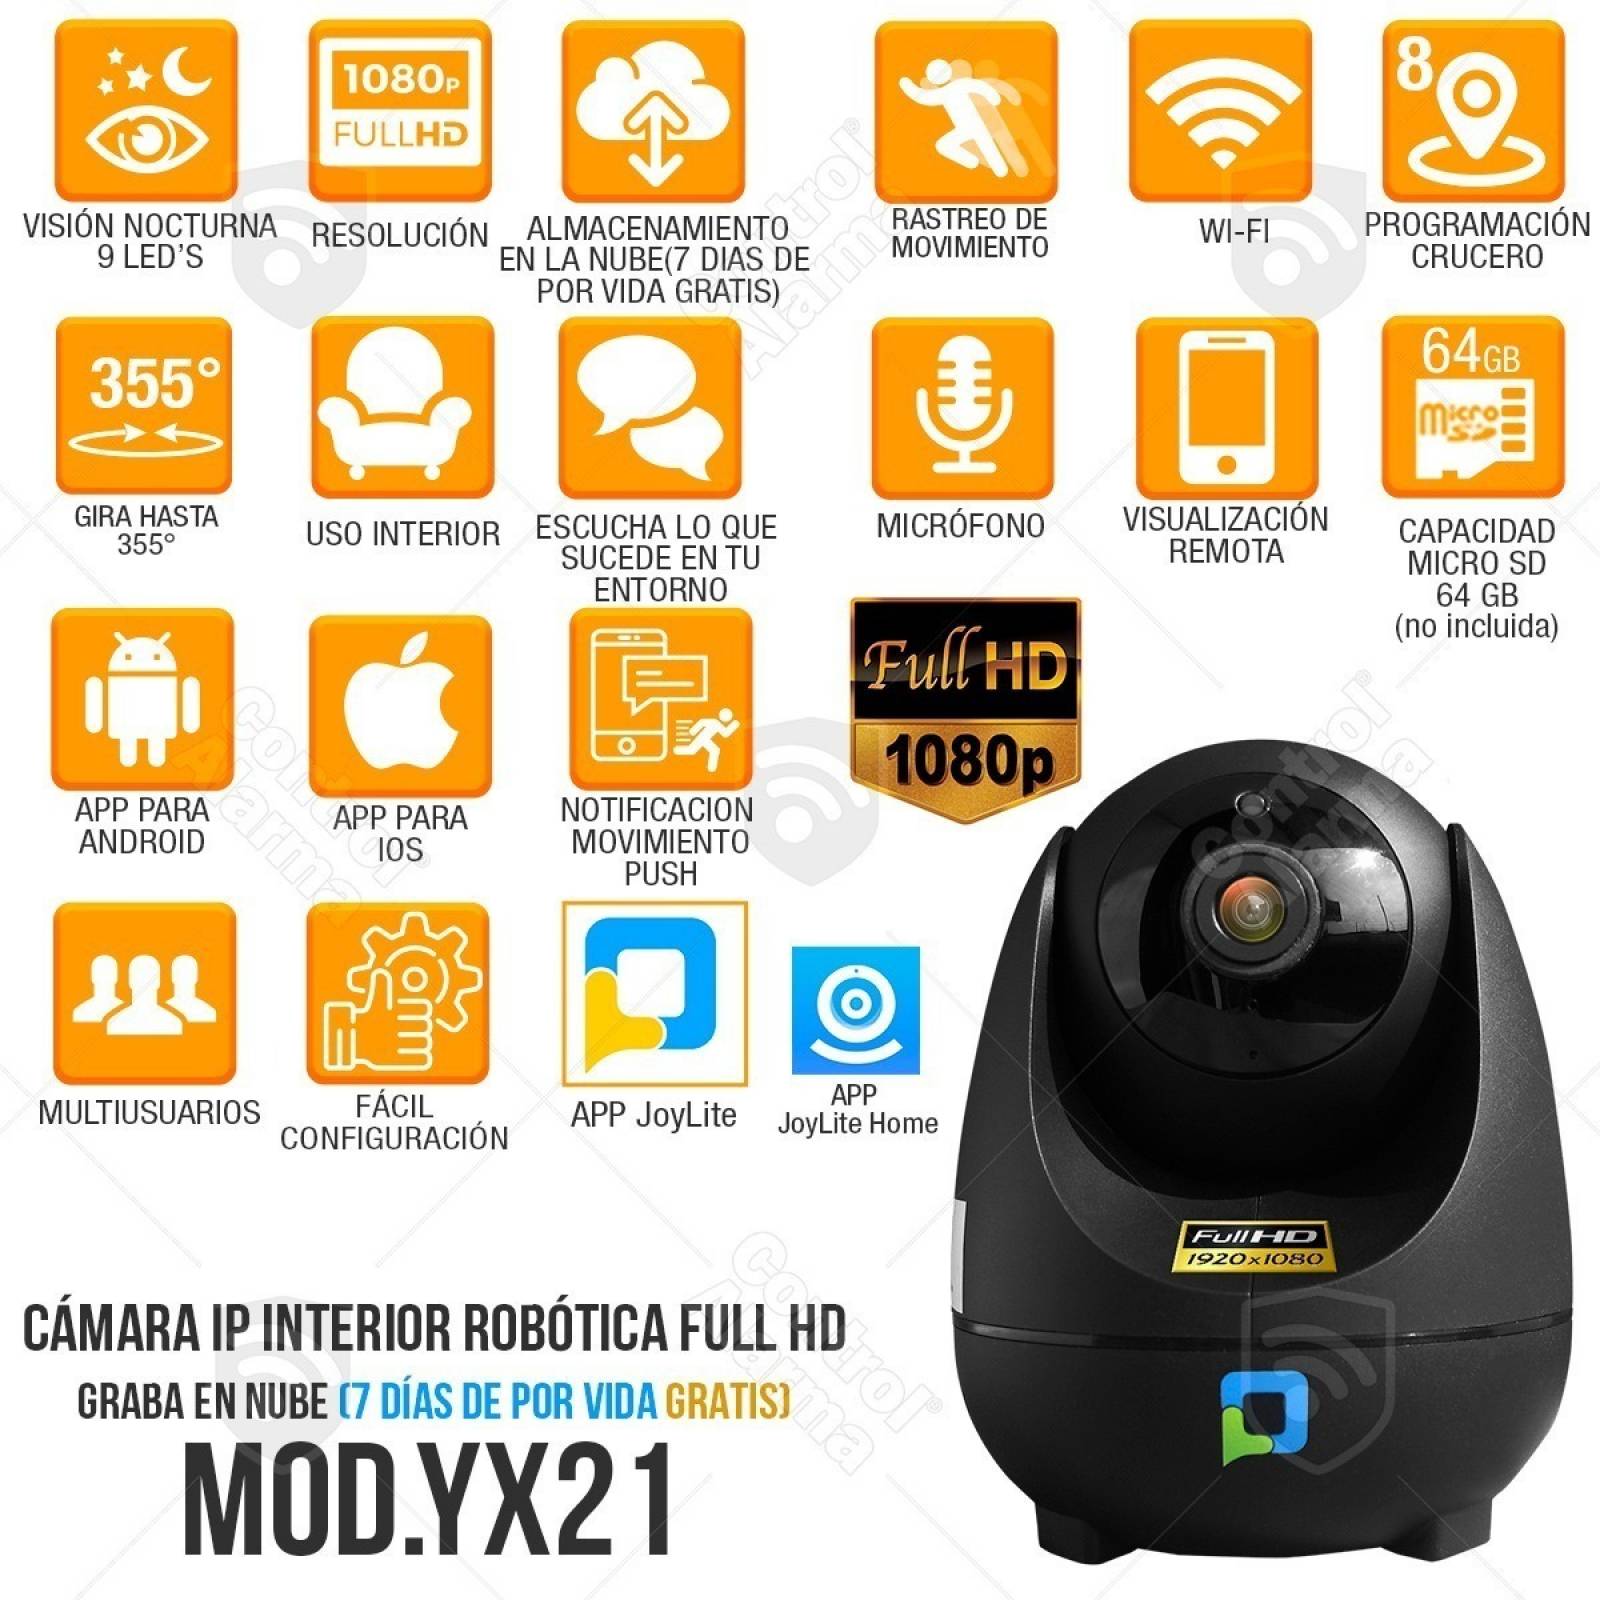 Camaras Wifi Ip Rastreo Movimiento Nube FHD Micro SD 64gb